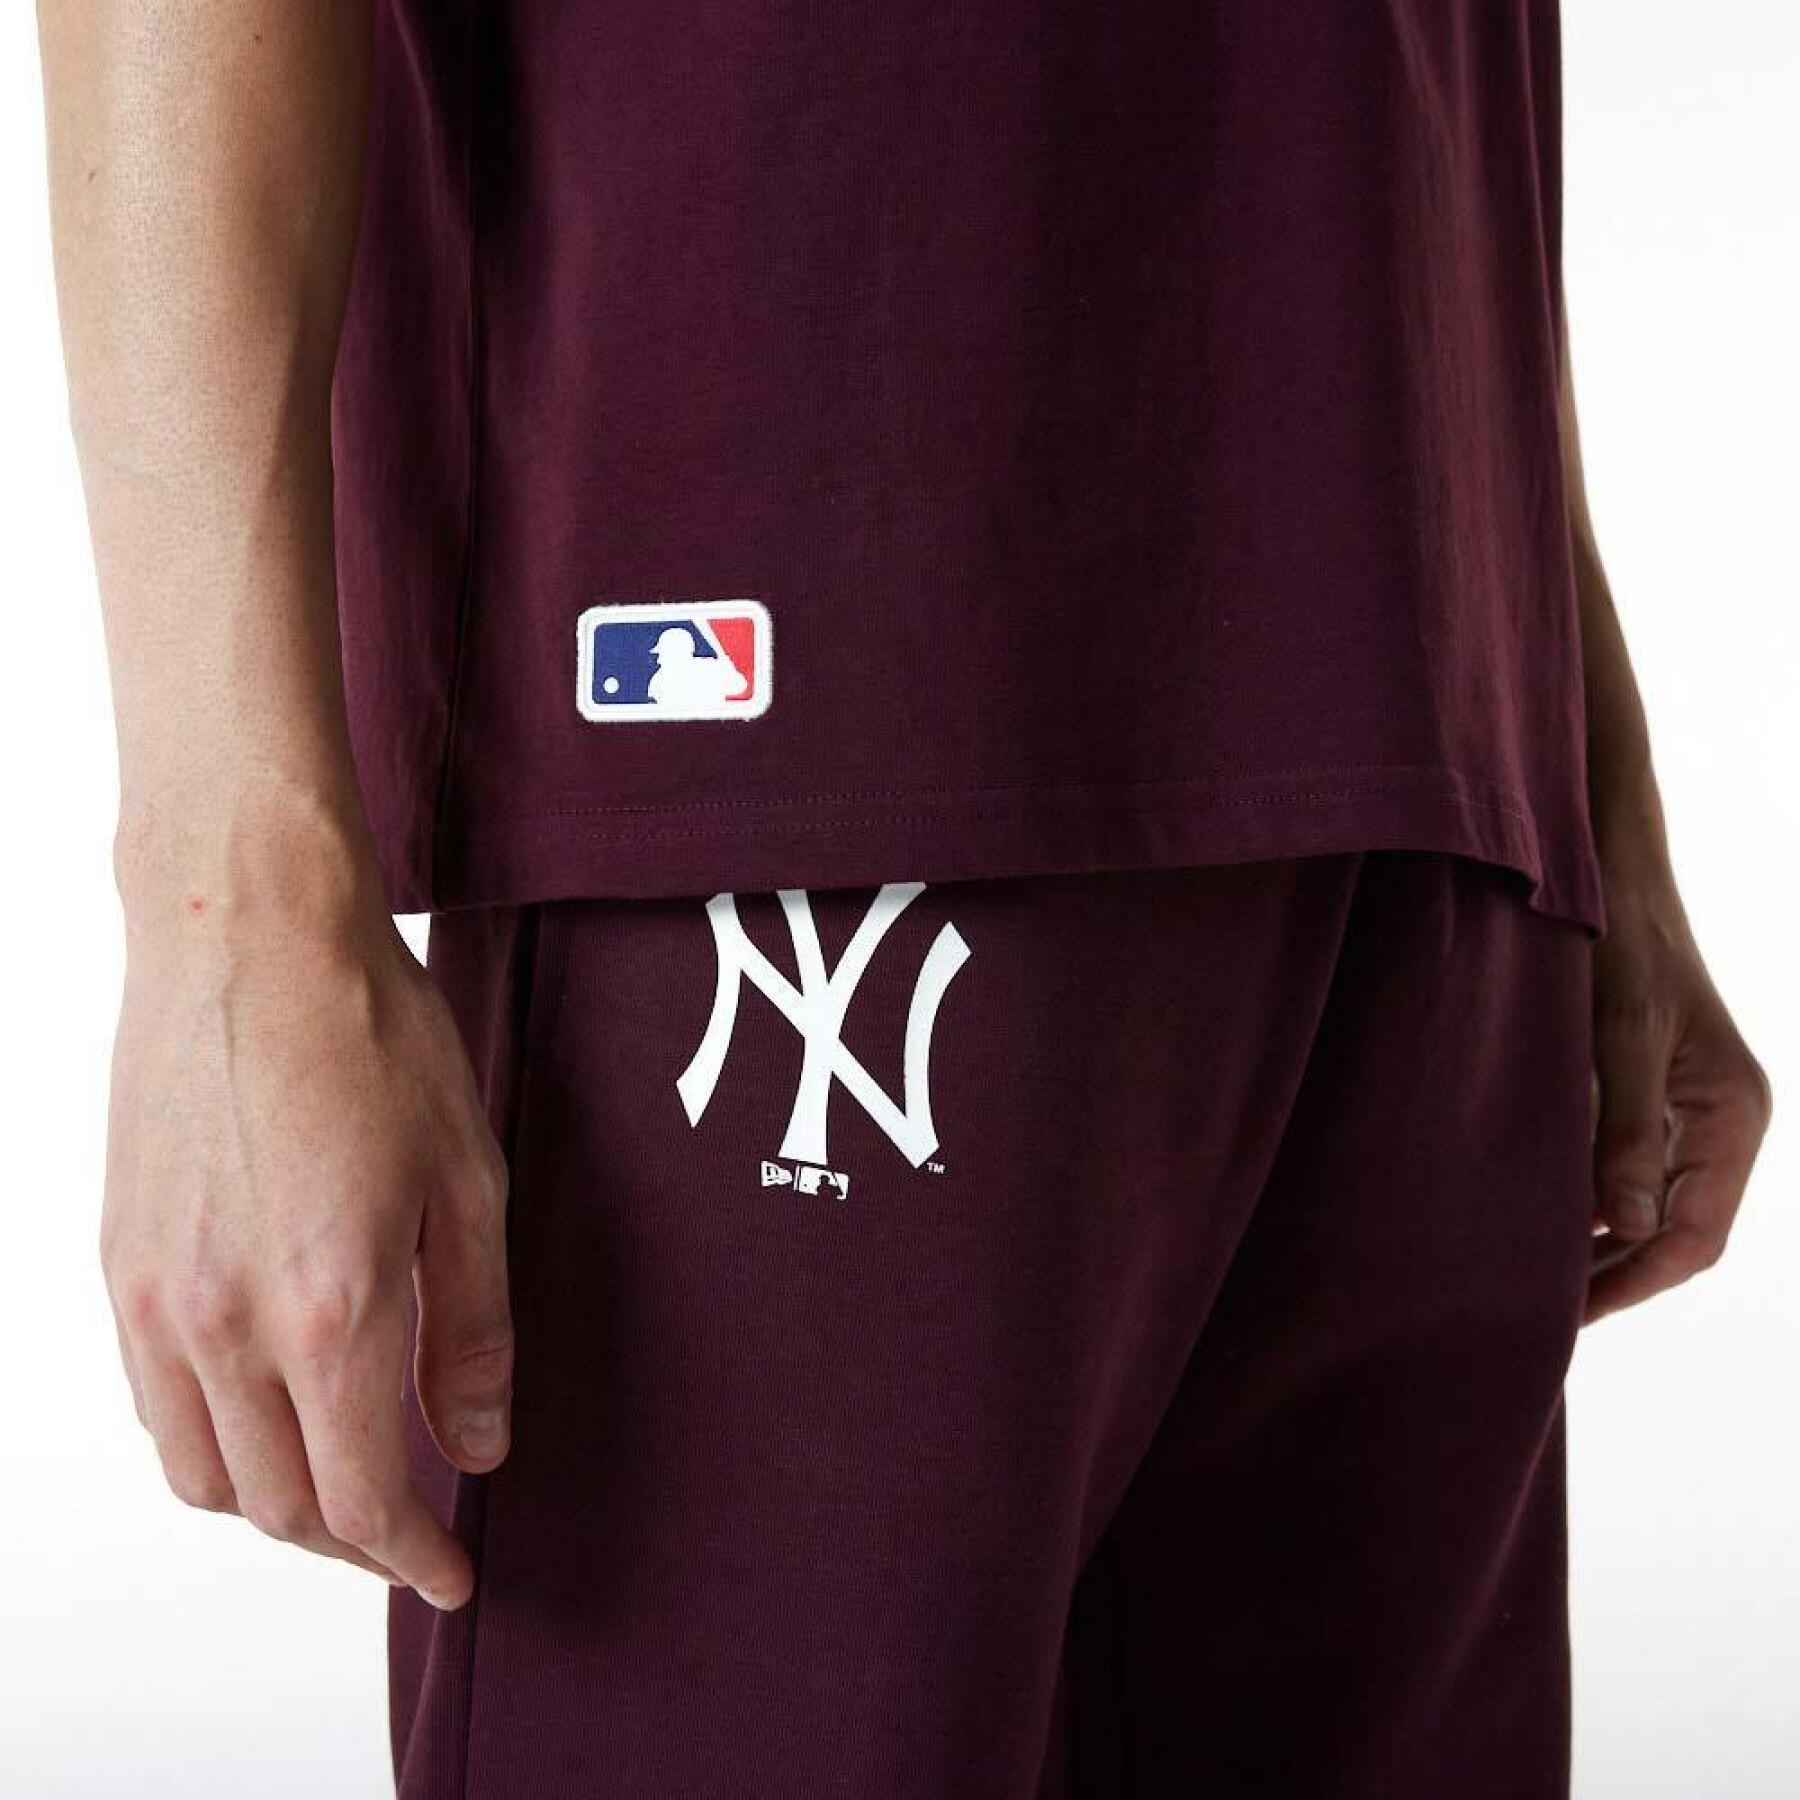 T-shirt oversize New York Yankees League Essentials